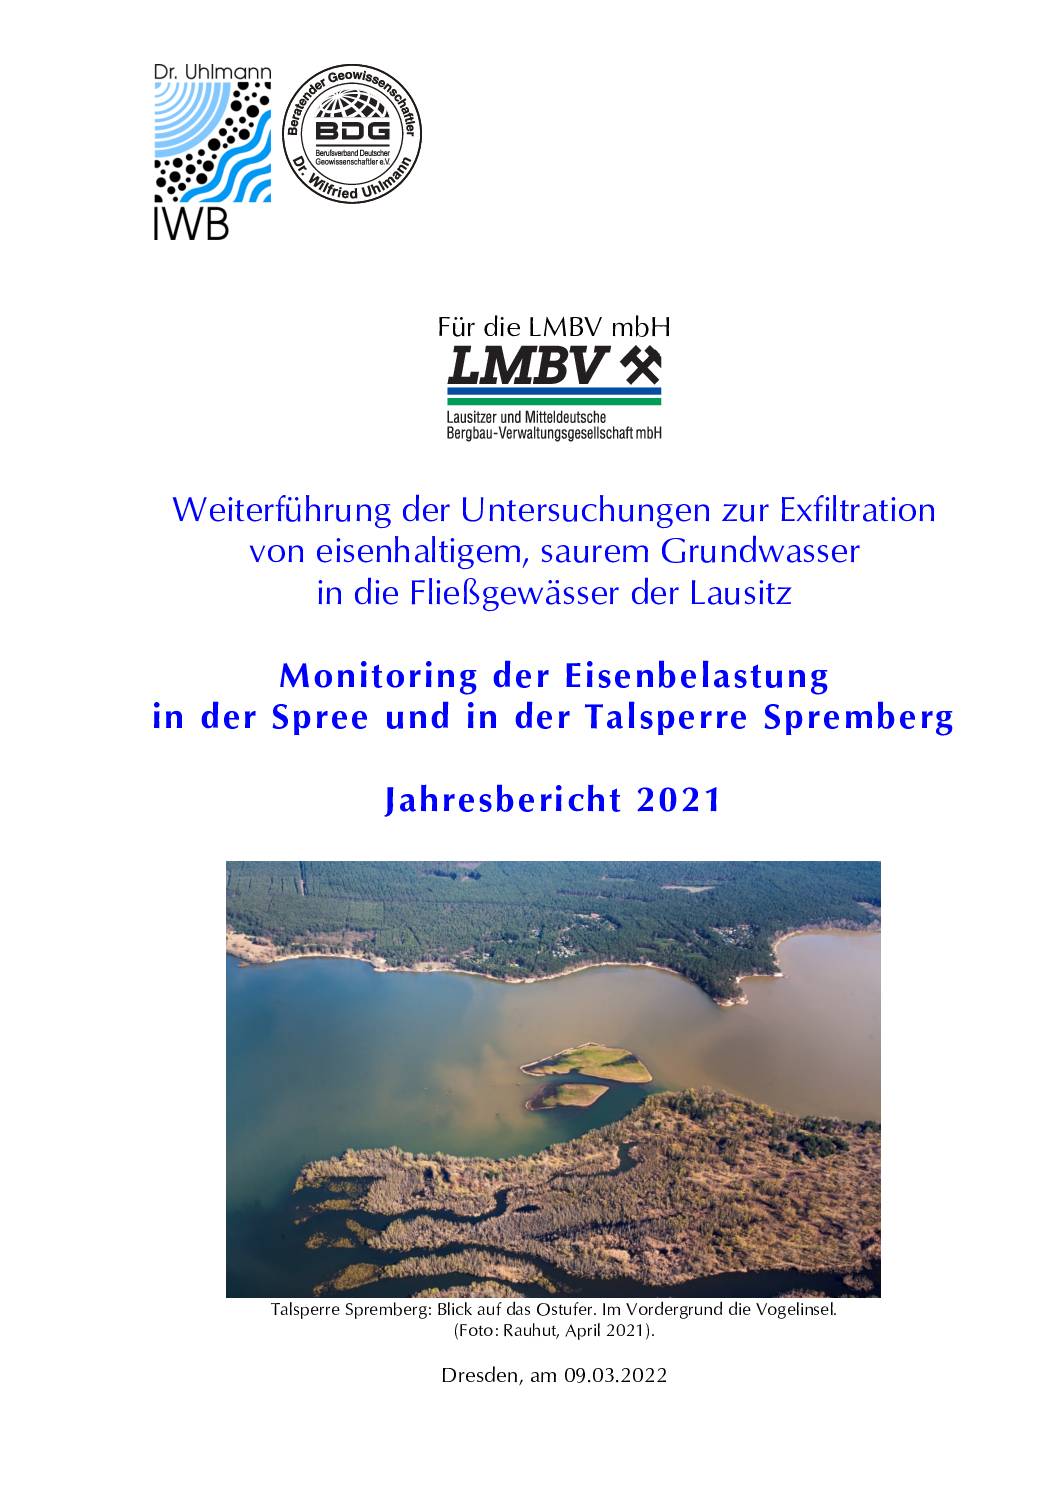 Jahresbericht 2021 Eisenbelastung Spree und Talsperre Spremberg 20220314 pdf